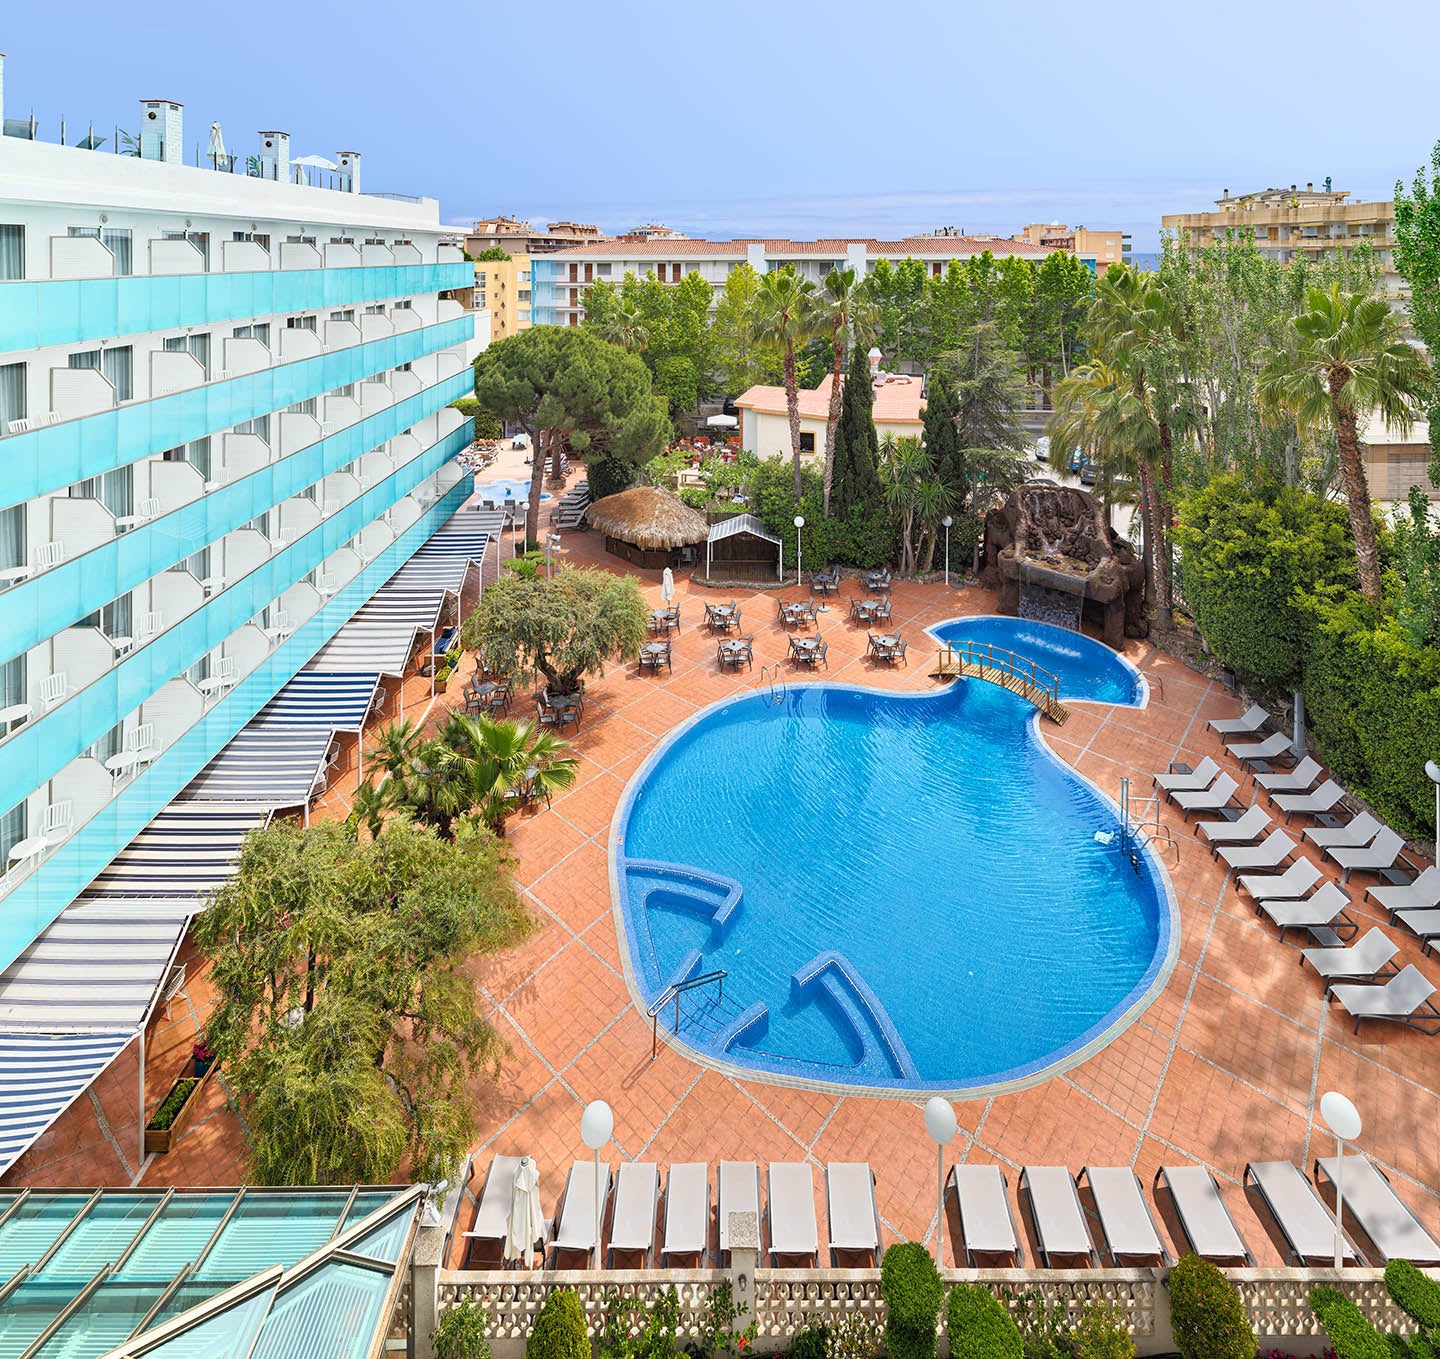 Vista general del hotel y la piscina